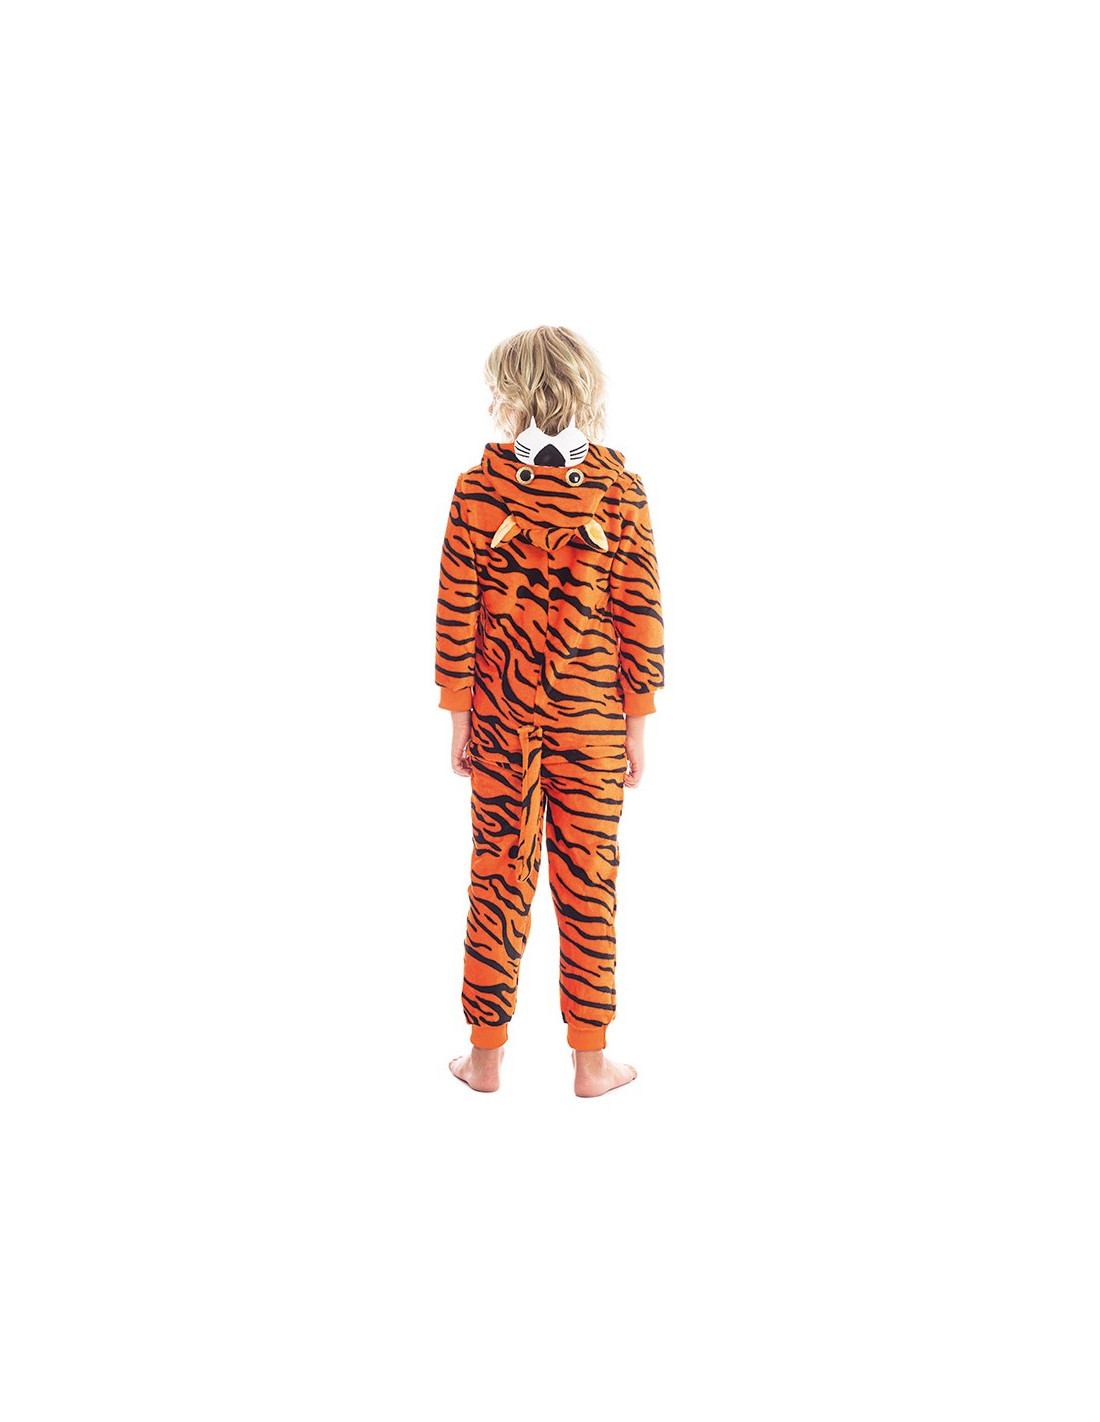 Disfraz de Tigre Pijama de Peluche para Niños Online